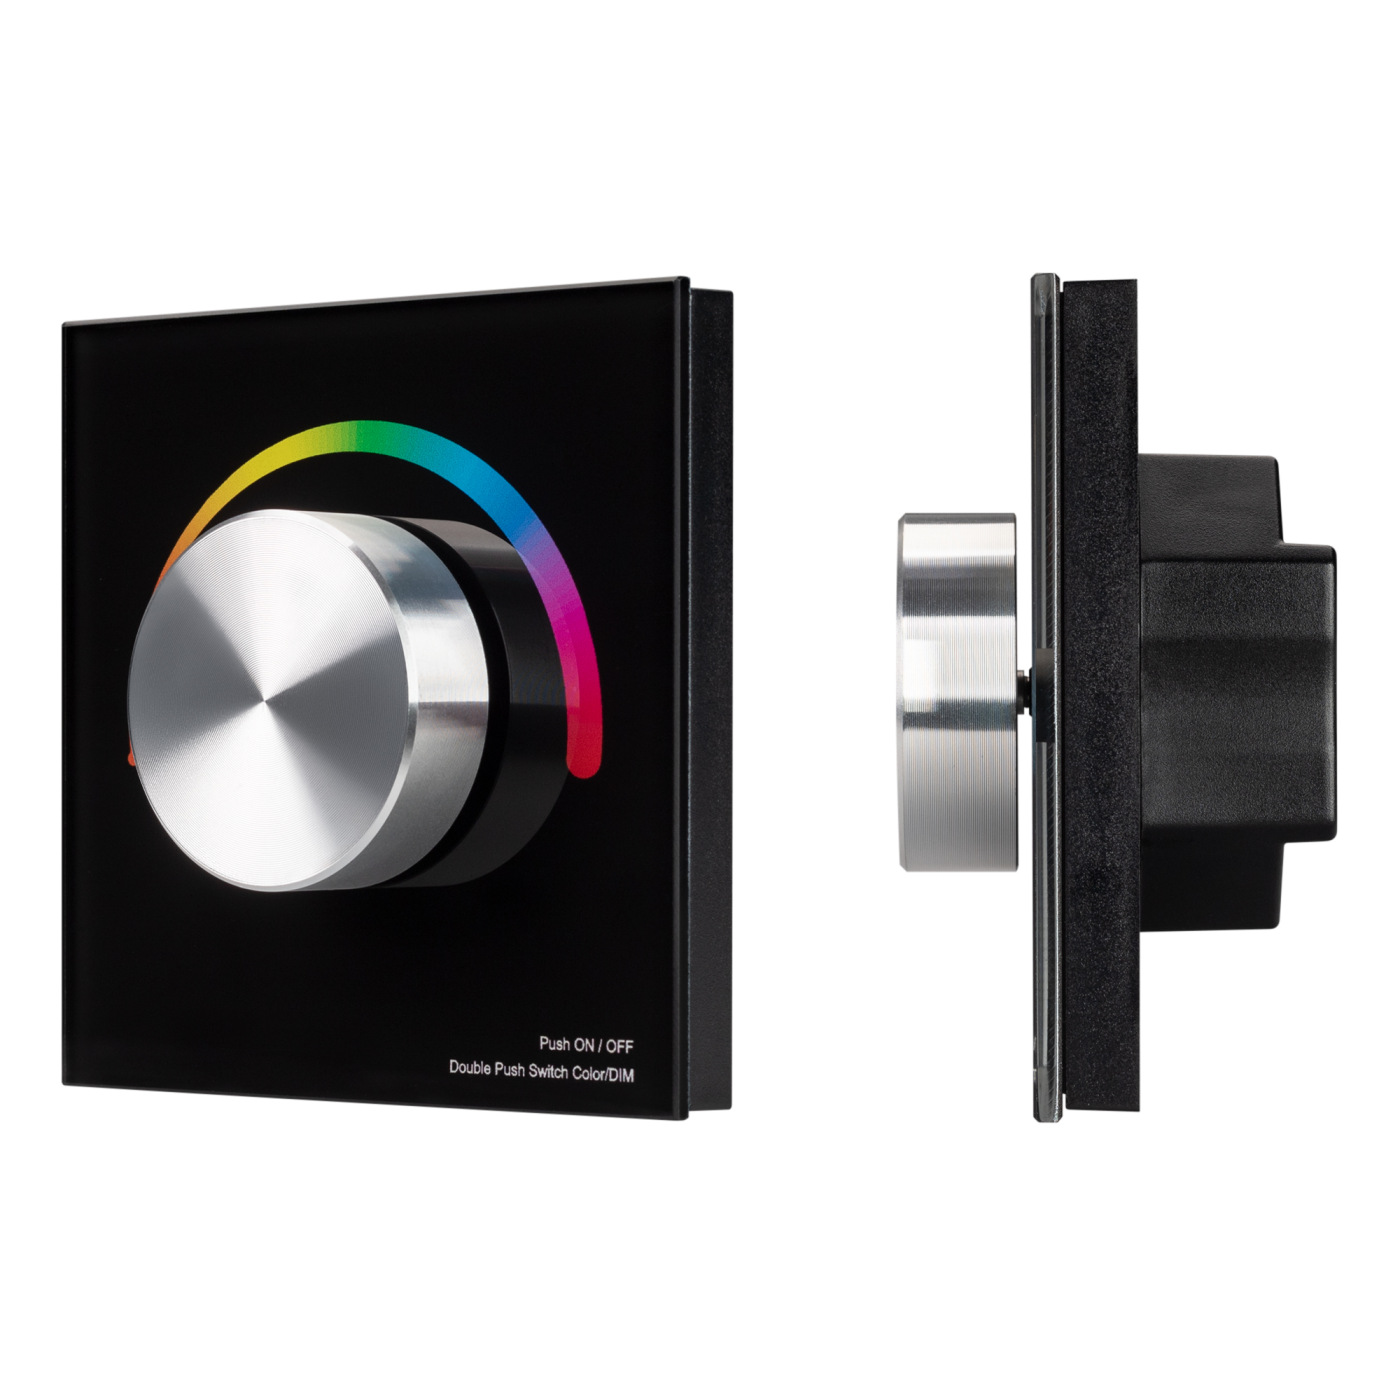 Панель SMART-P8-RGB-G-IN Black (12-24V, 3x4A, Rotary, 2.4G) (Arlight, IP20 Пластик, 5 лет) диммер sr 2402 12 36v 96 288w metal touch arlight